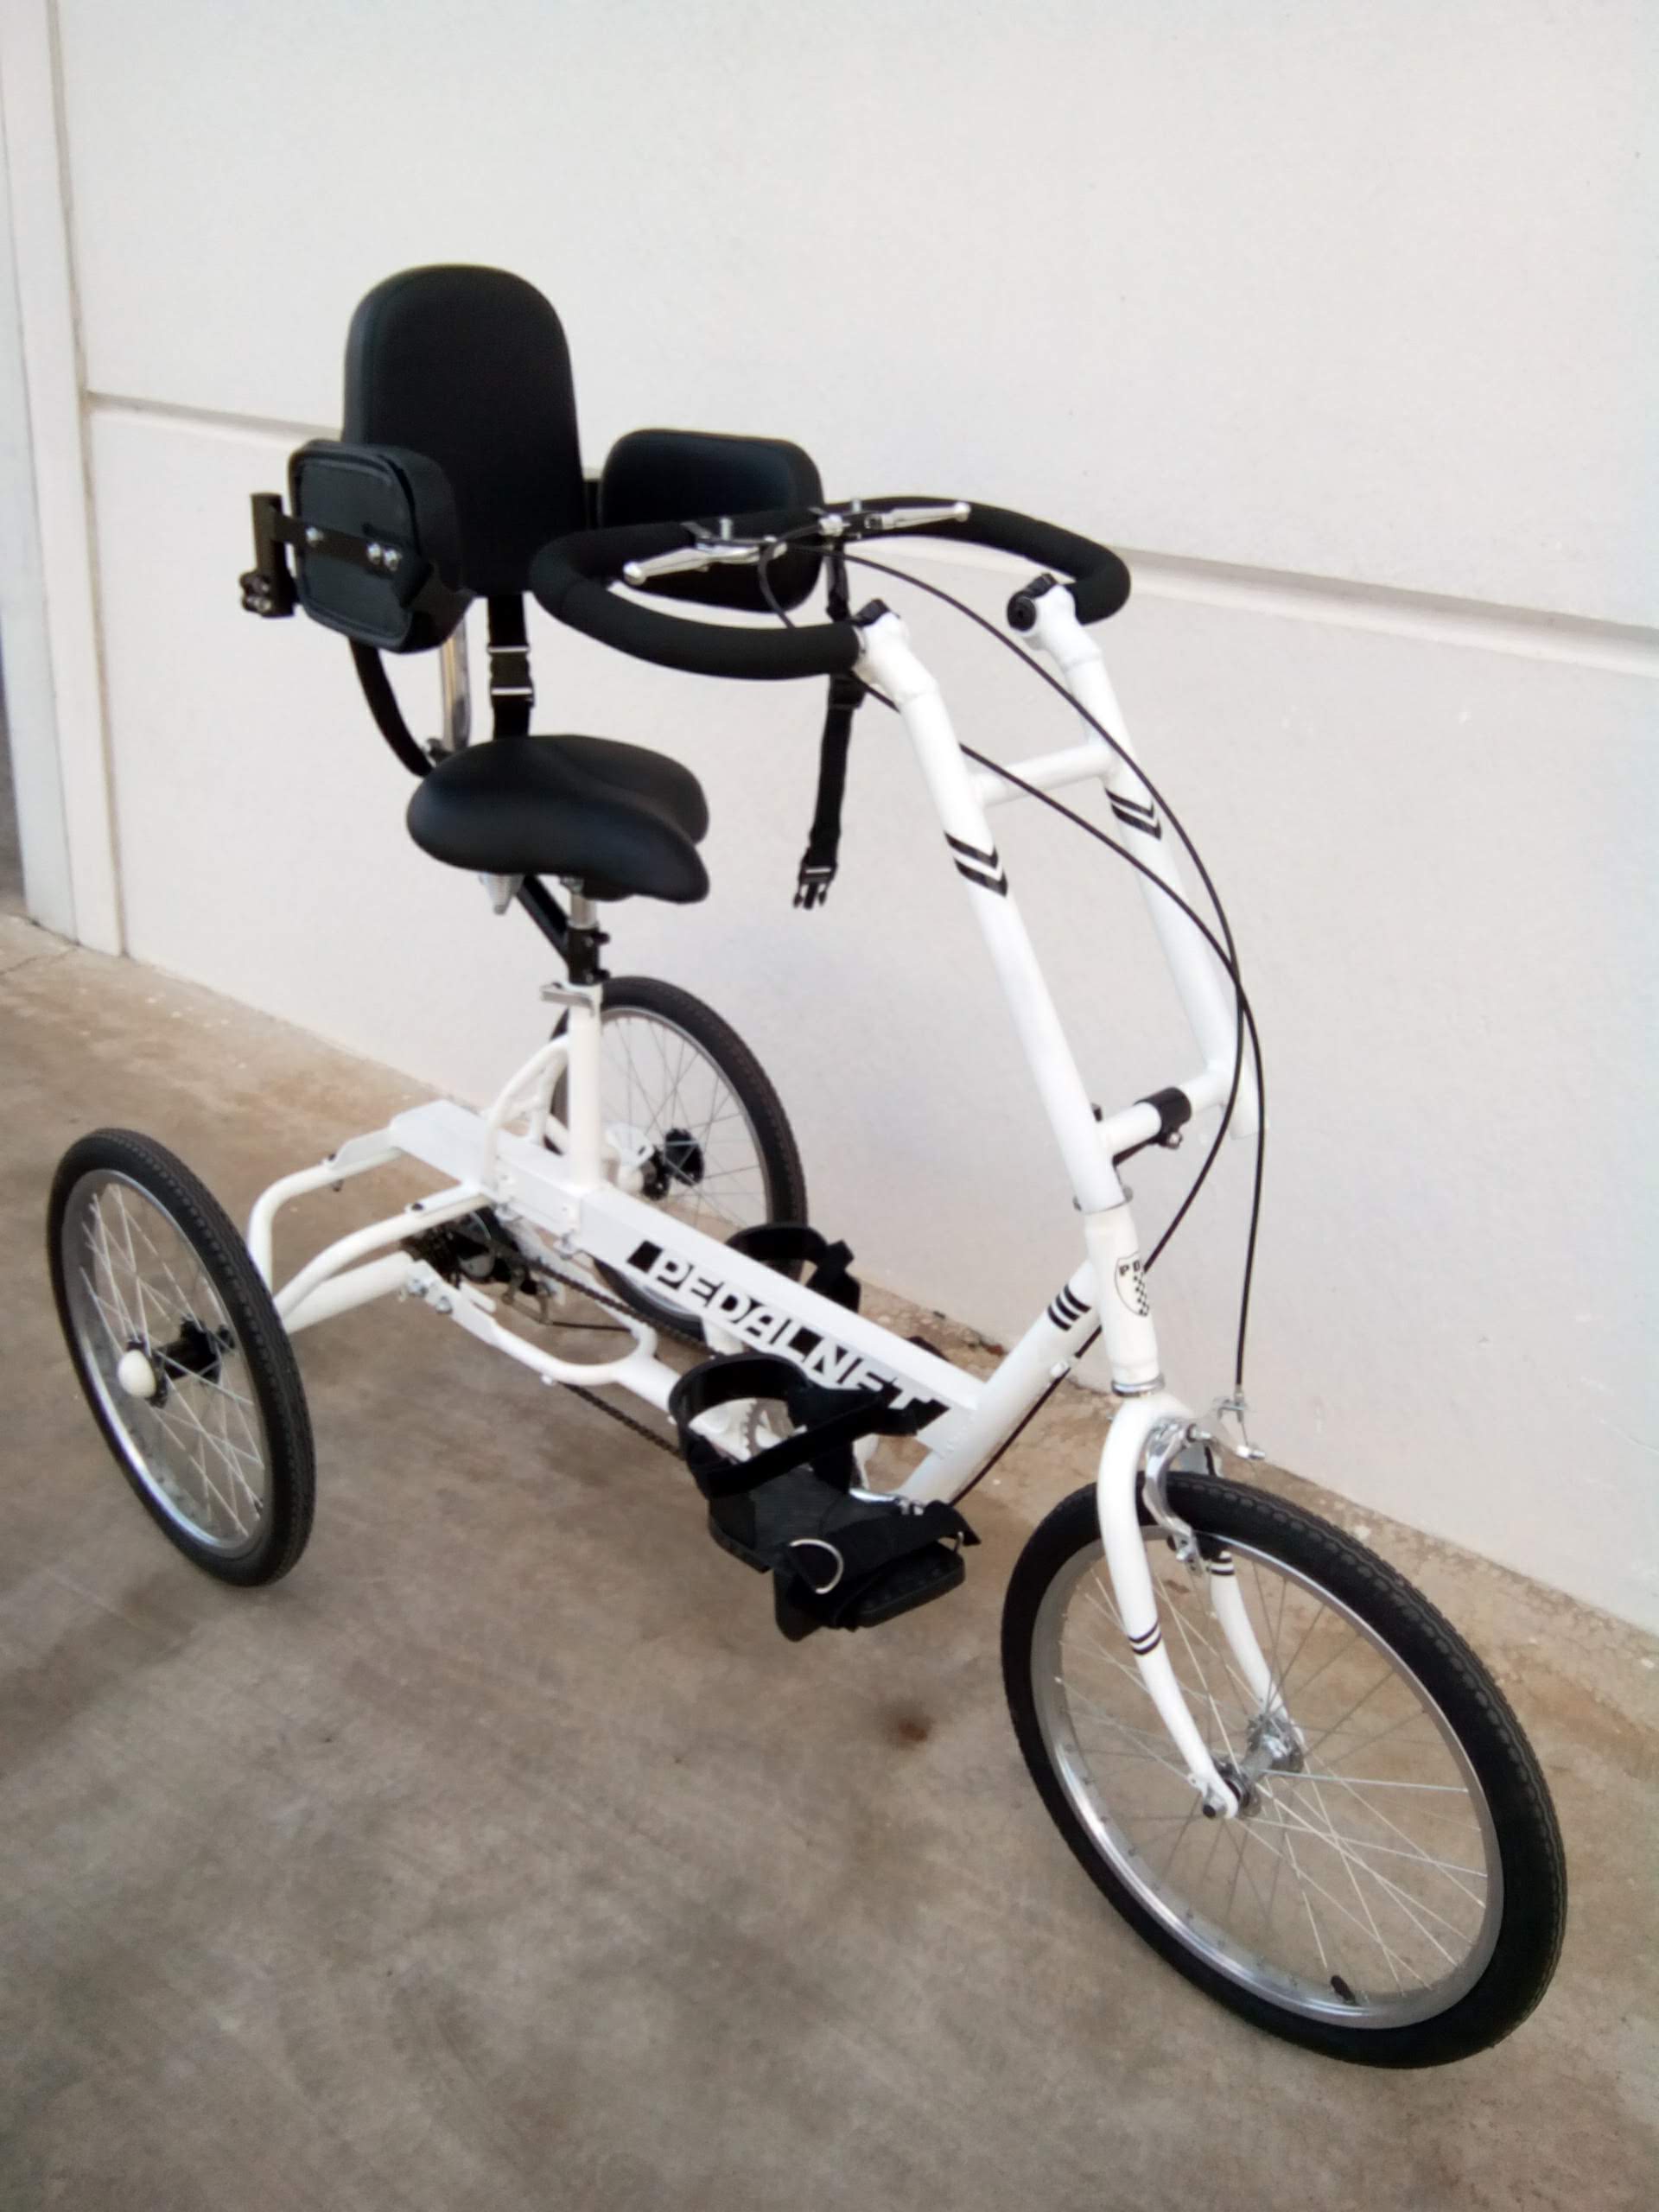 Detalle manillar especial triciclo adaptado junior